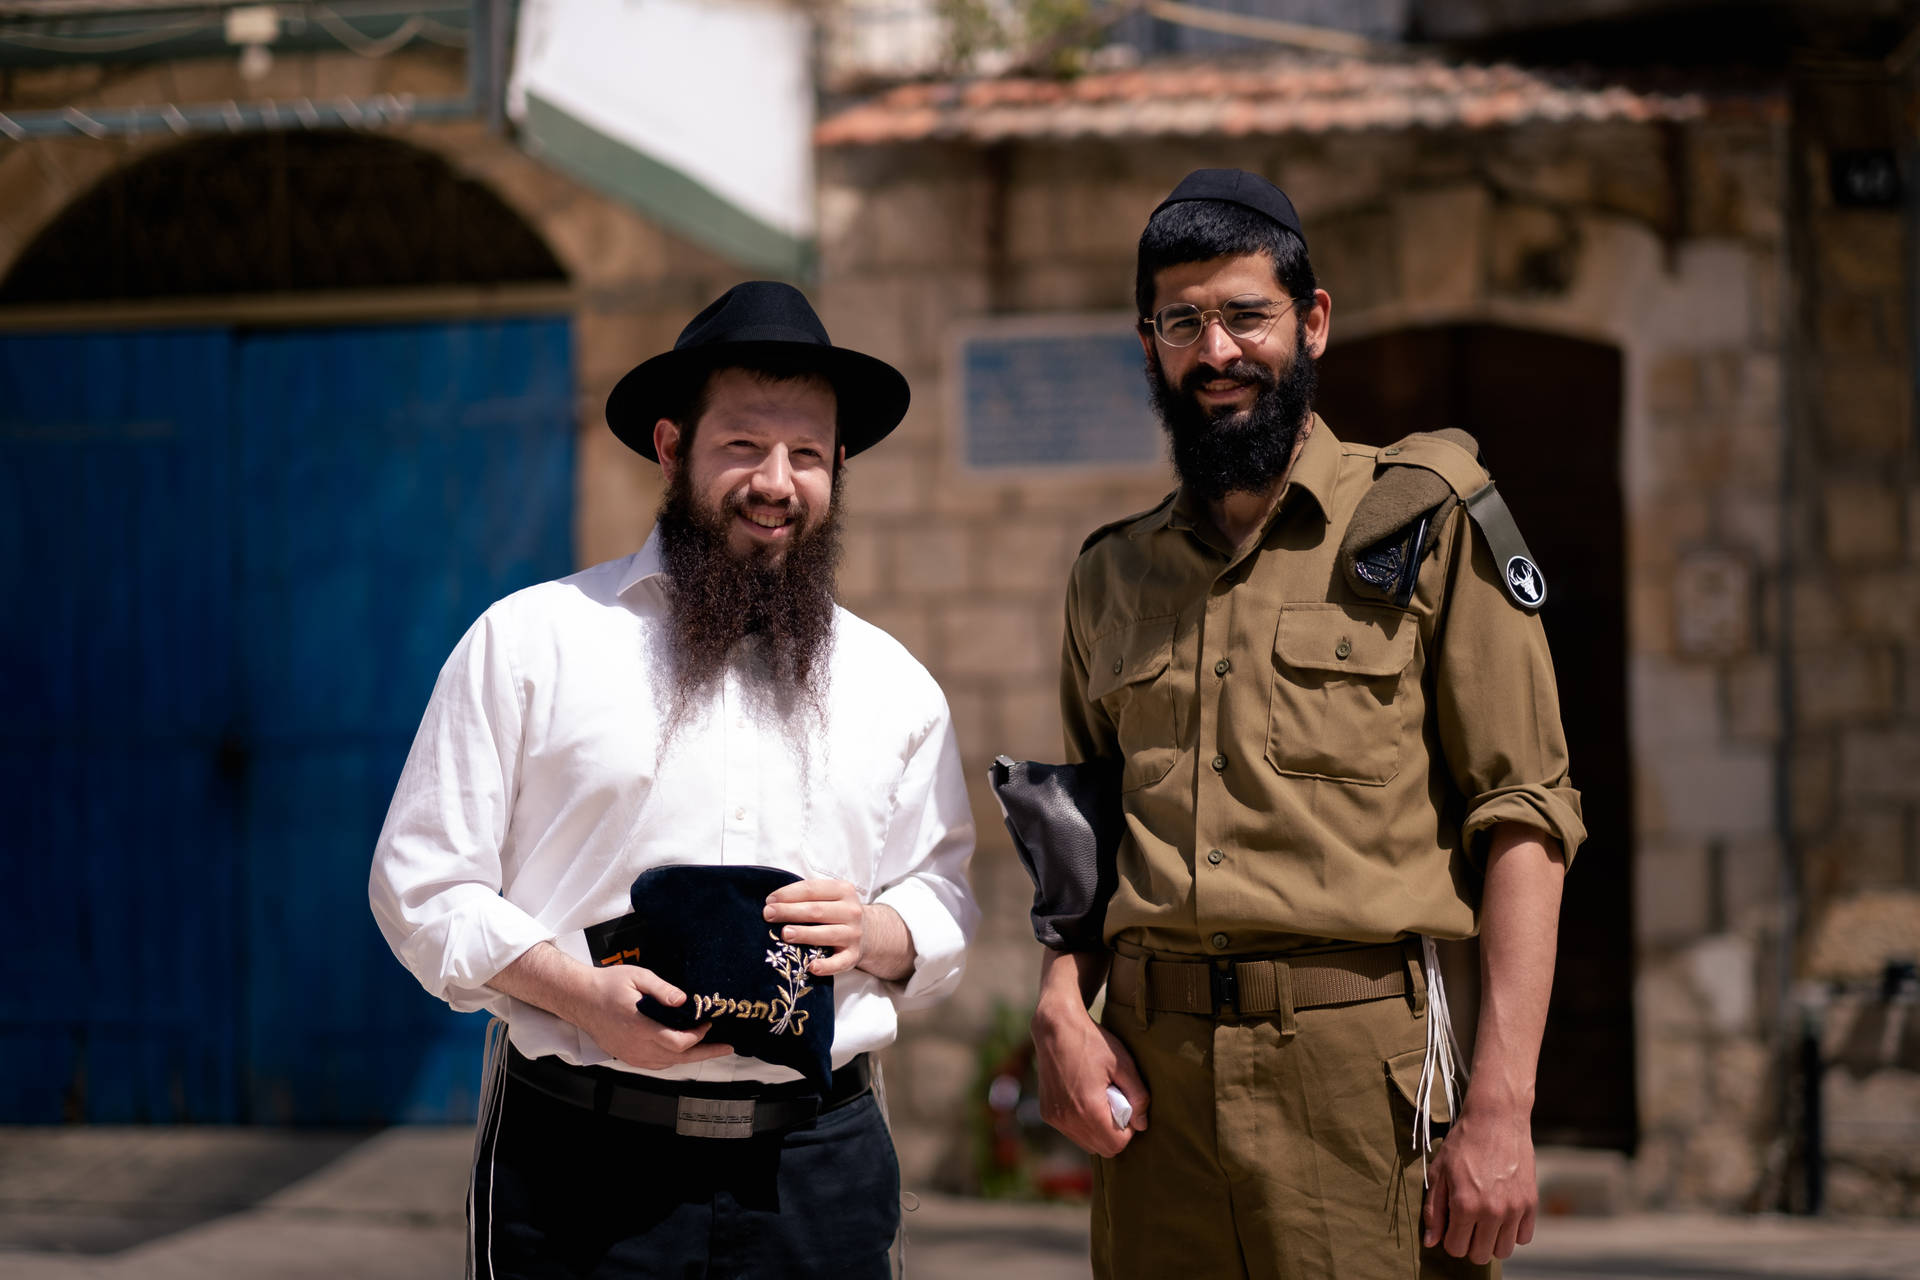 Yom Kippur Celebration Background